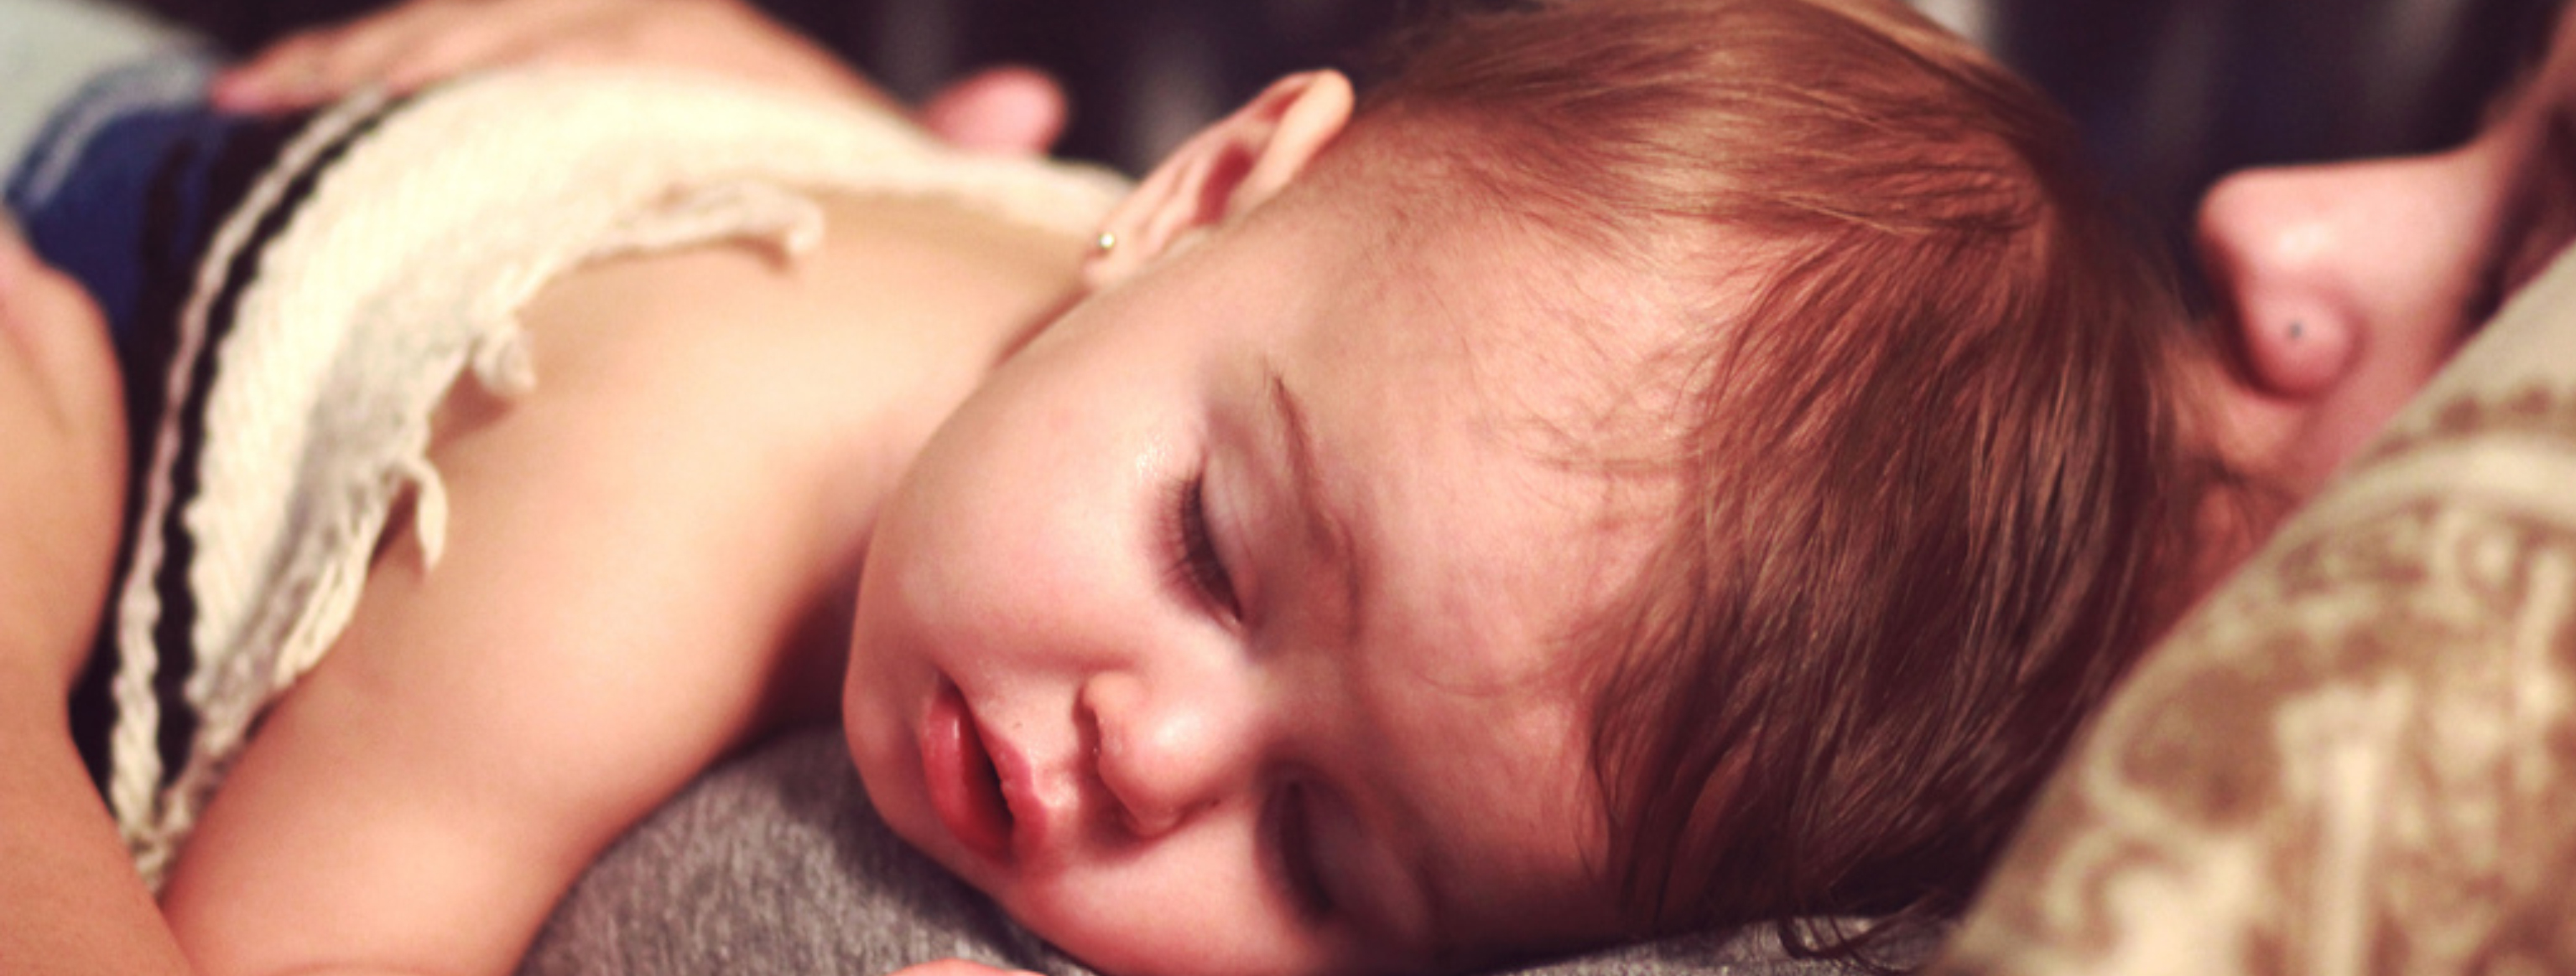 حمَّى الرضع: الأسباب وطرق العلاج